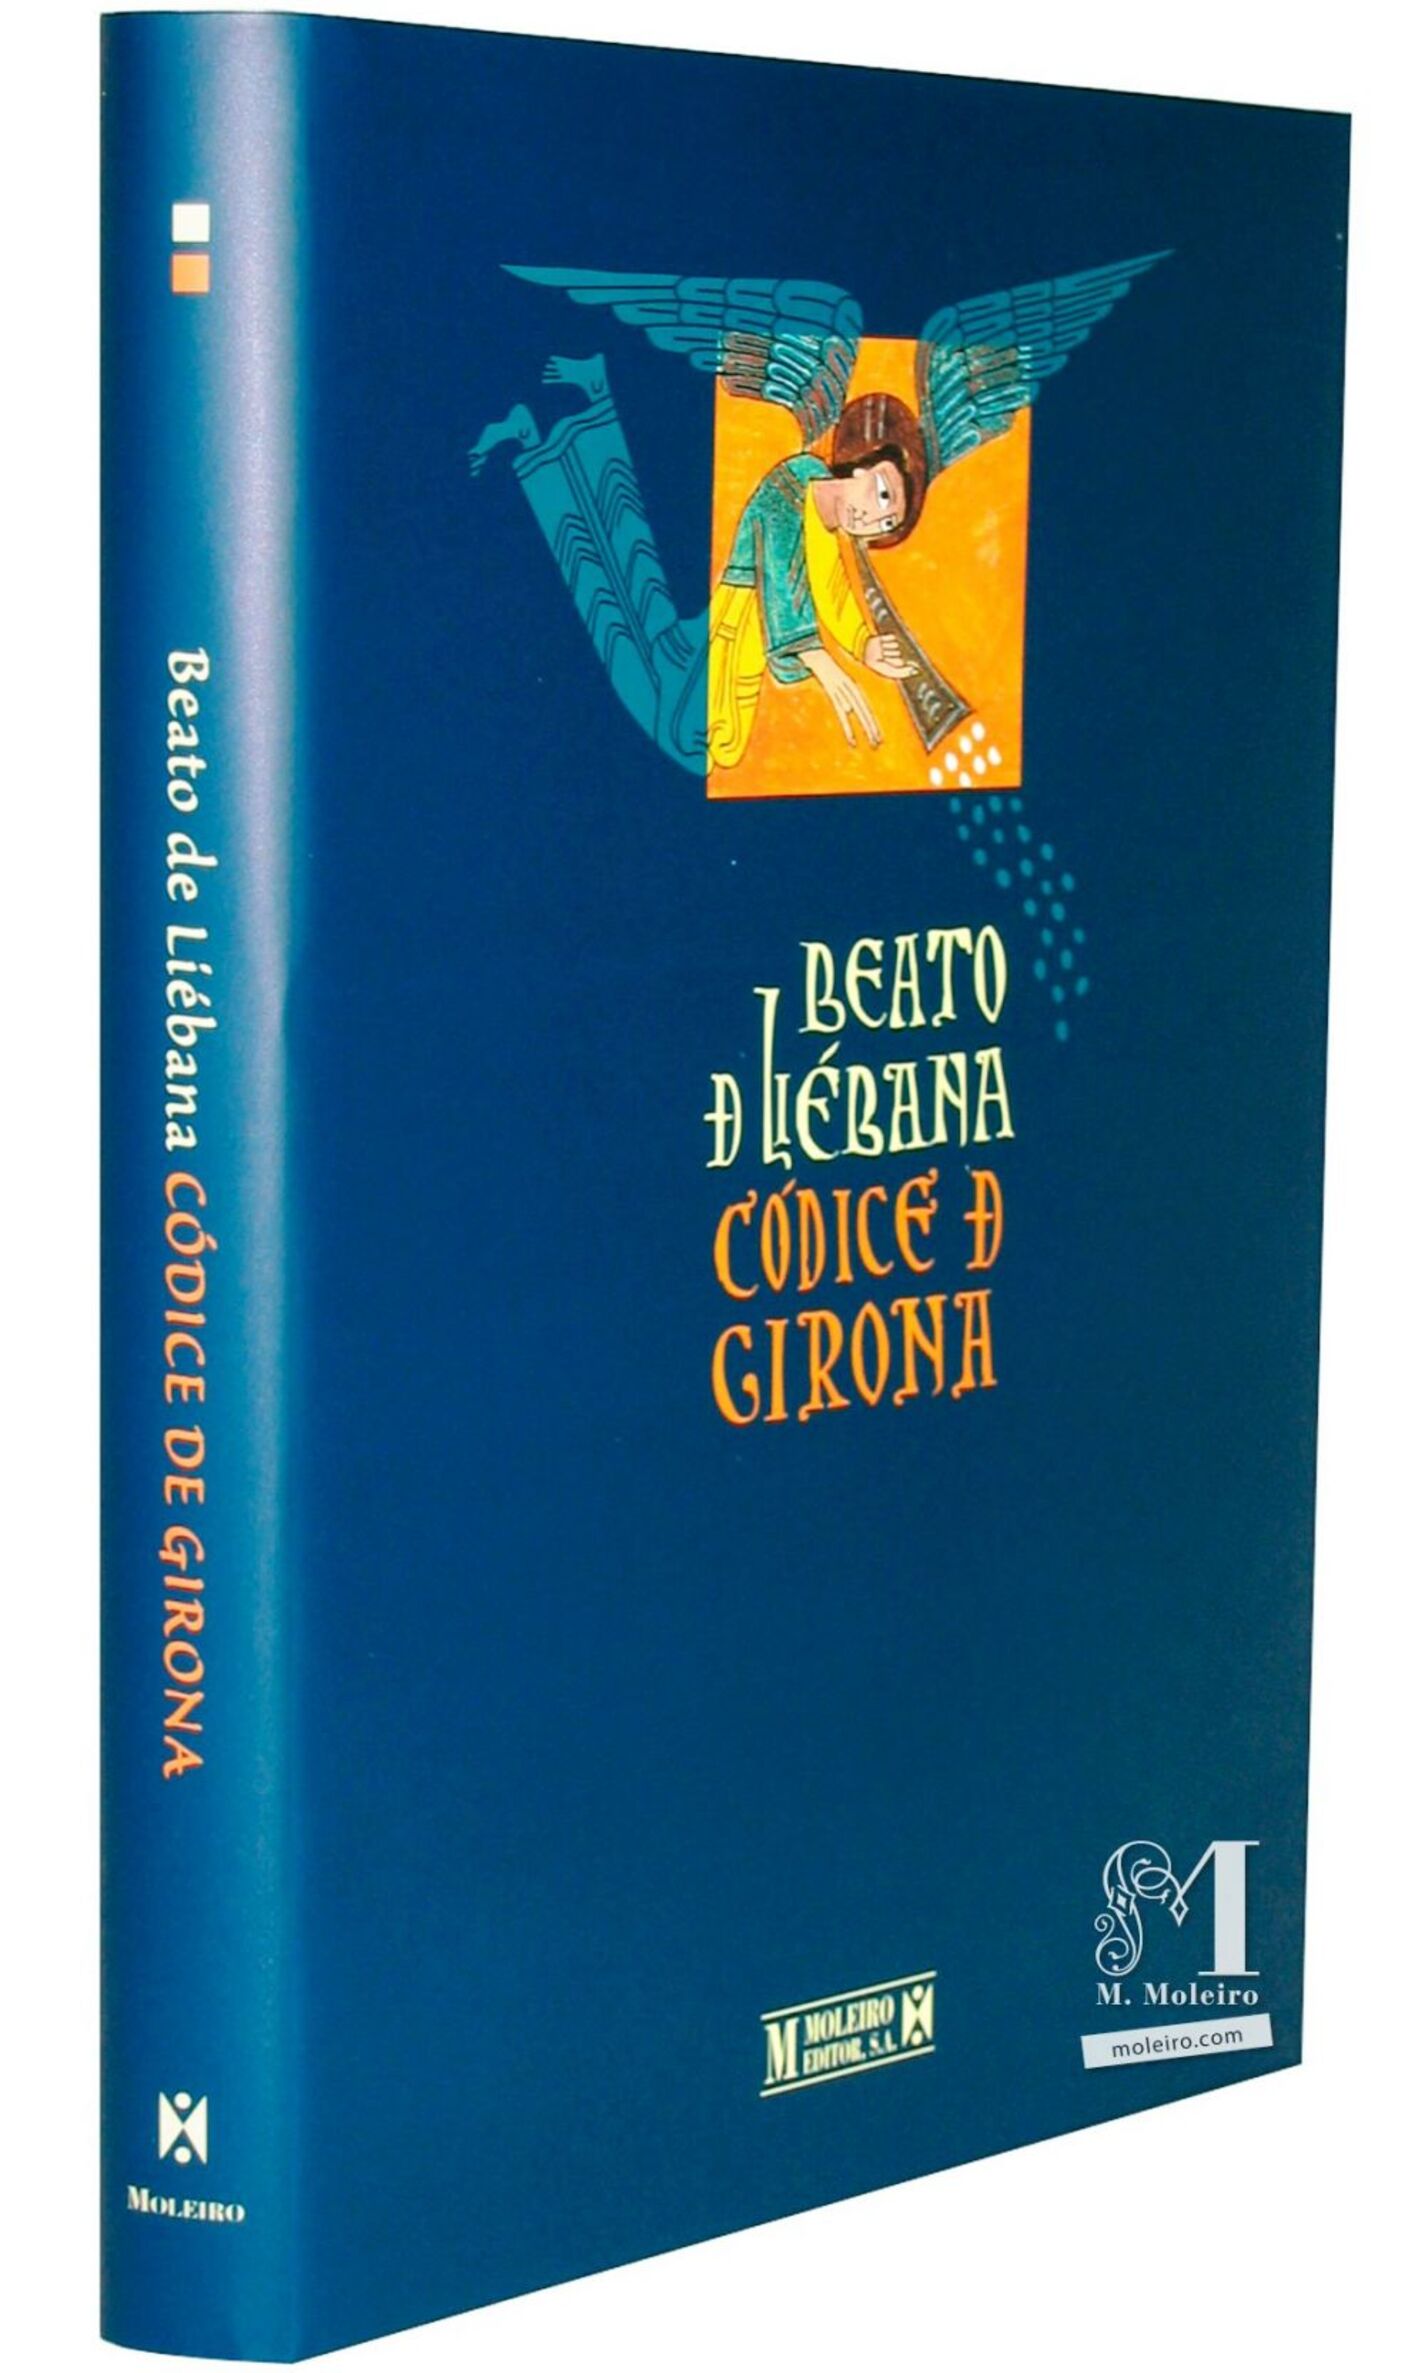 Detalle de la portada y lomo del libro de arte Beato de Gerona